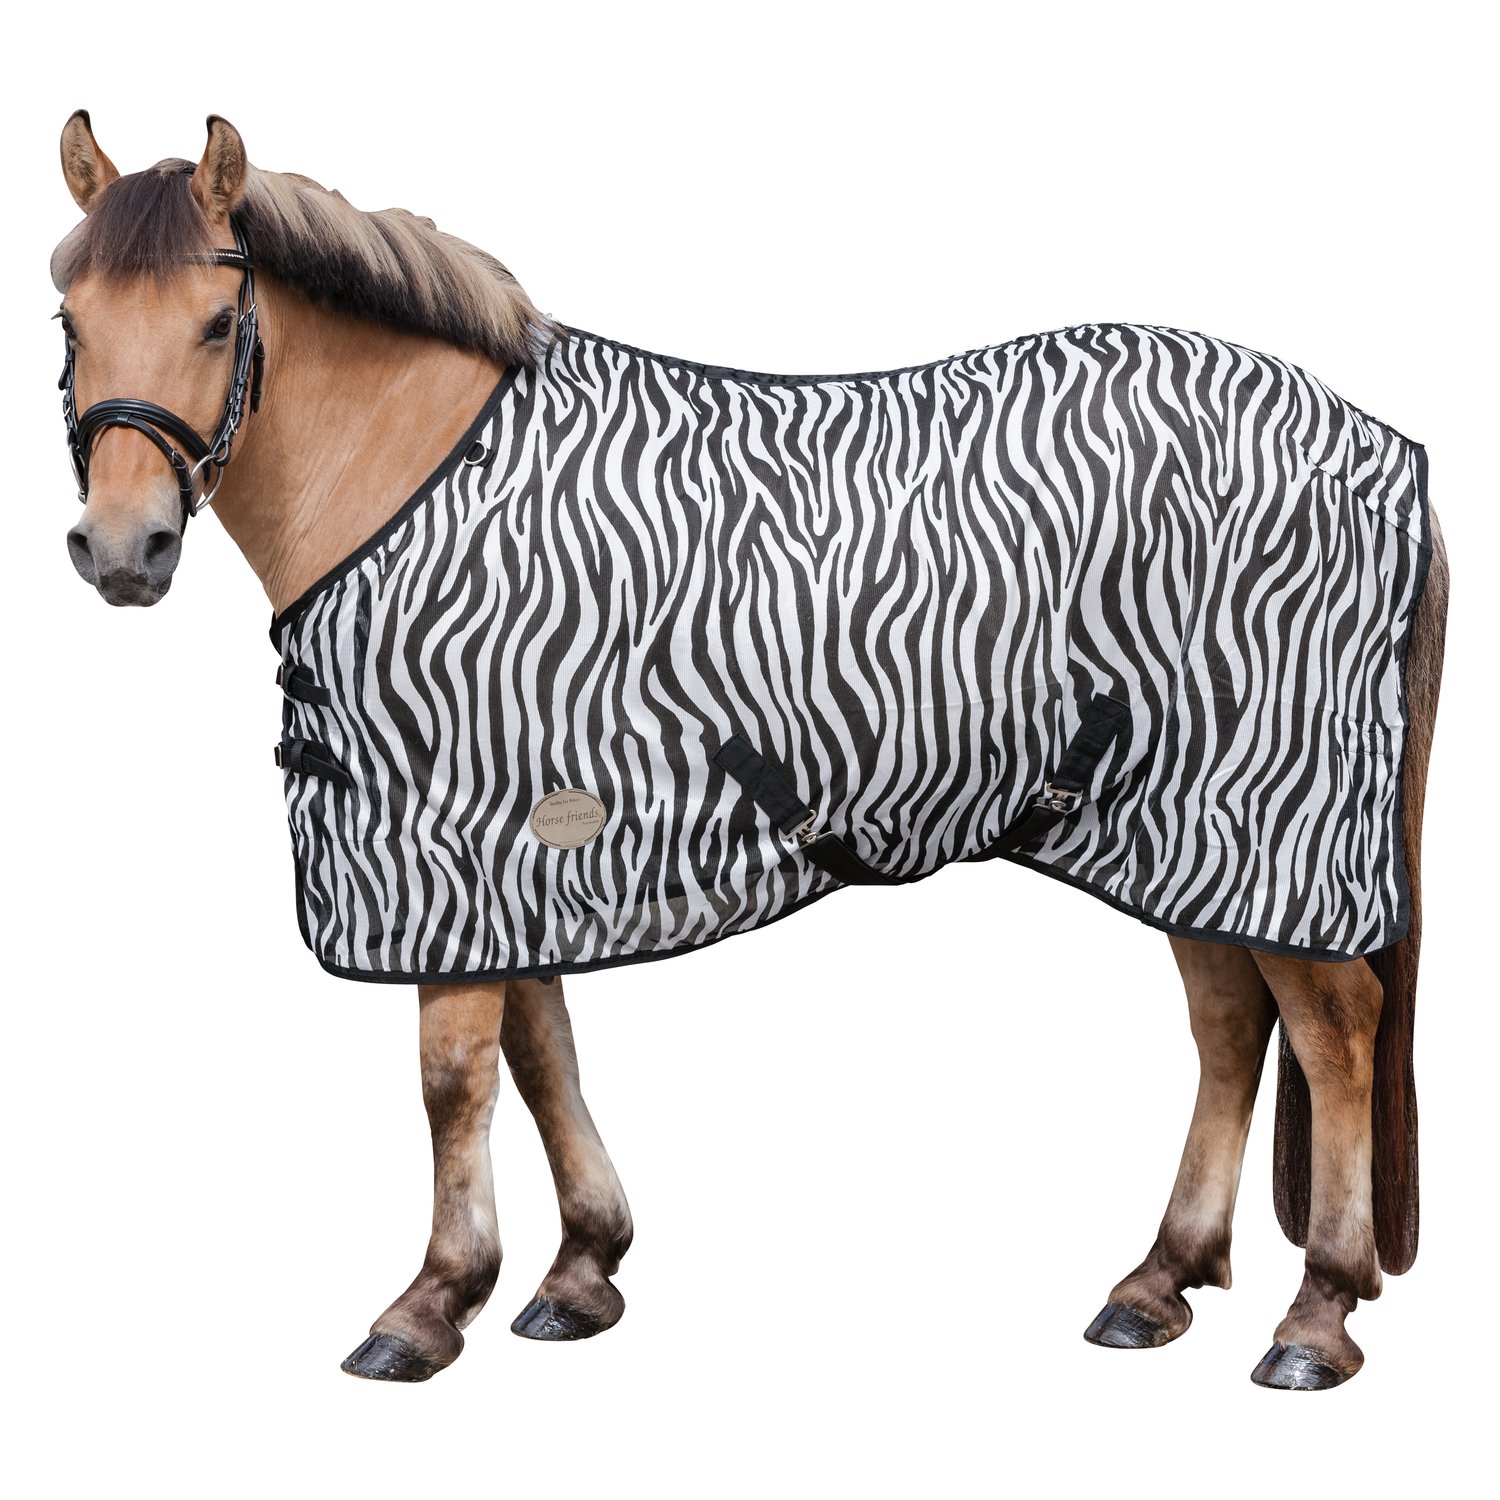 Horse-friends Fliegendecke mit Zebra-Muster zebra | 115 cm